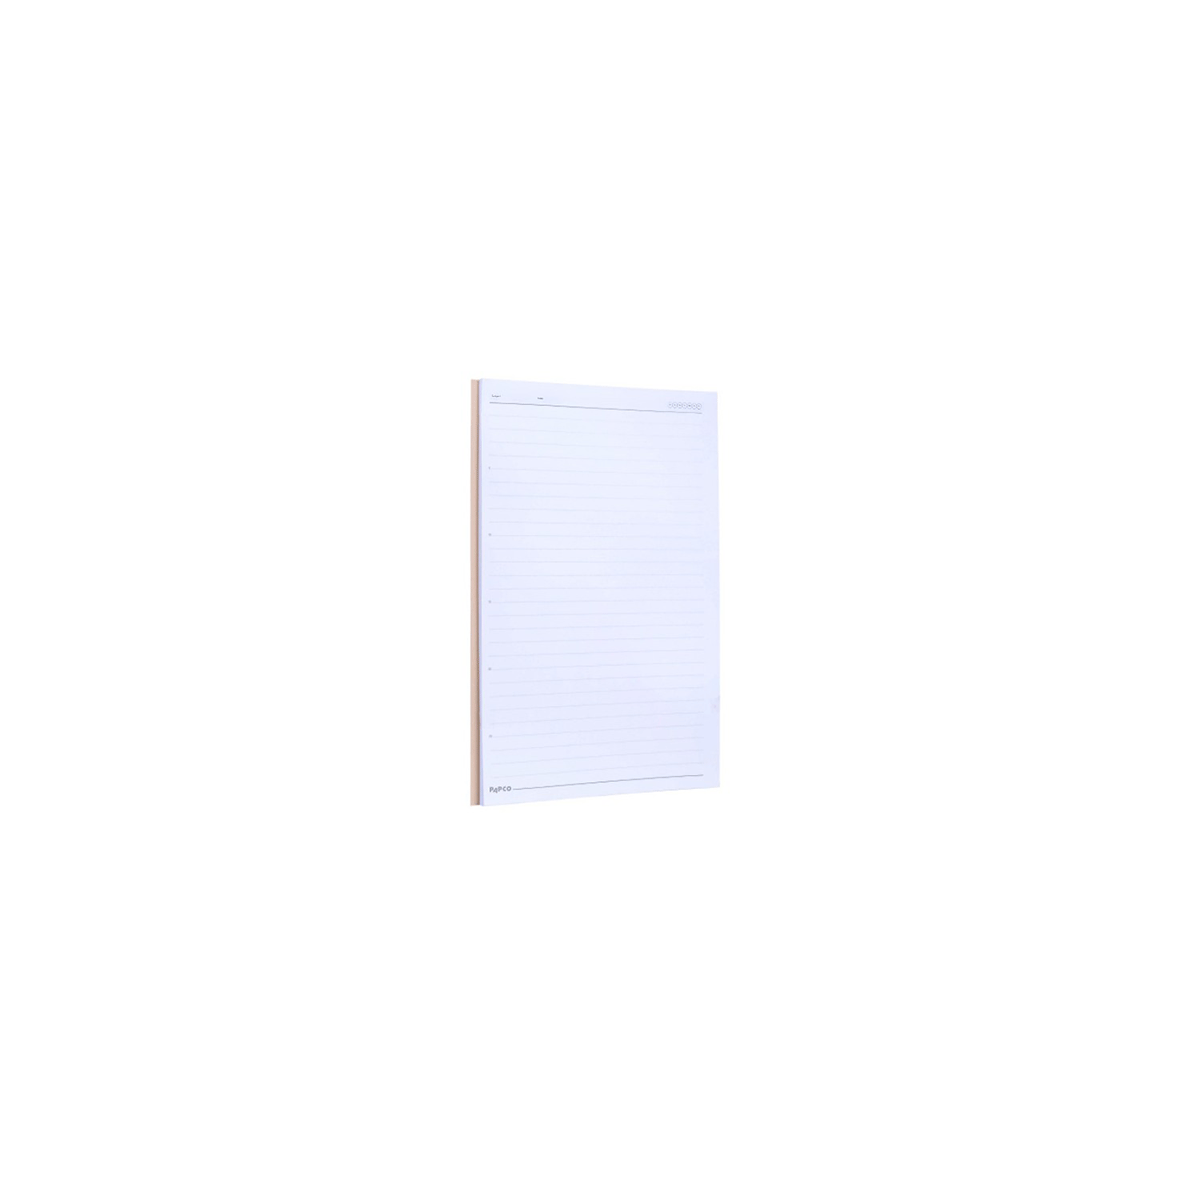 [11181] کاغذ خط دار A4 / پاپکو